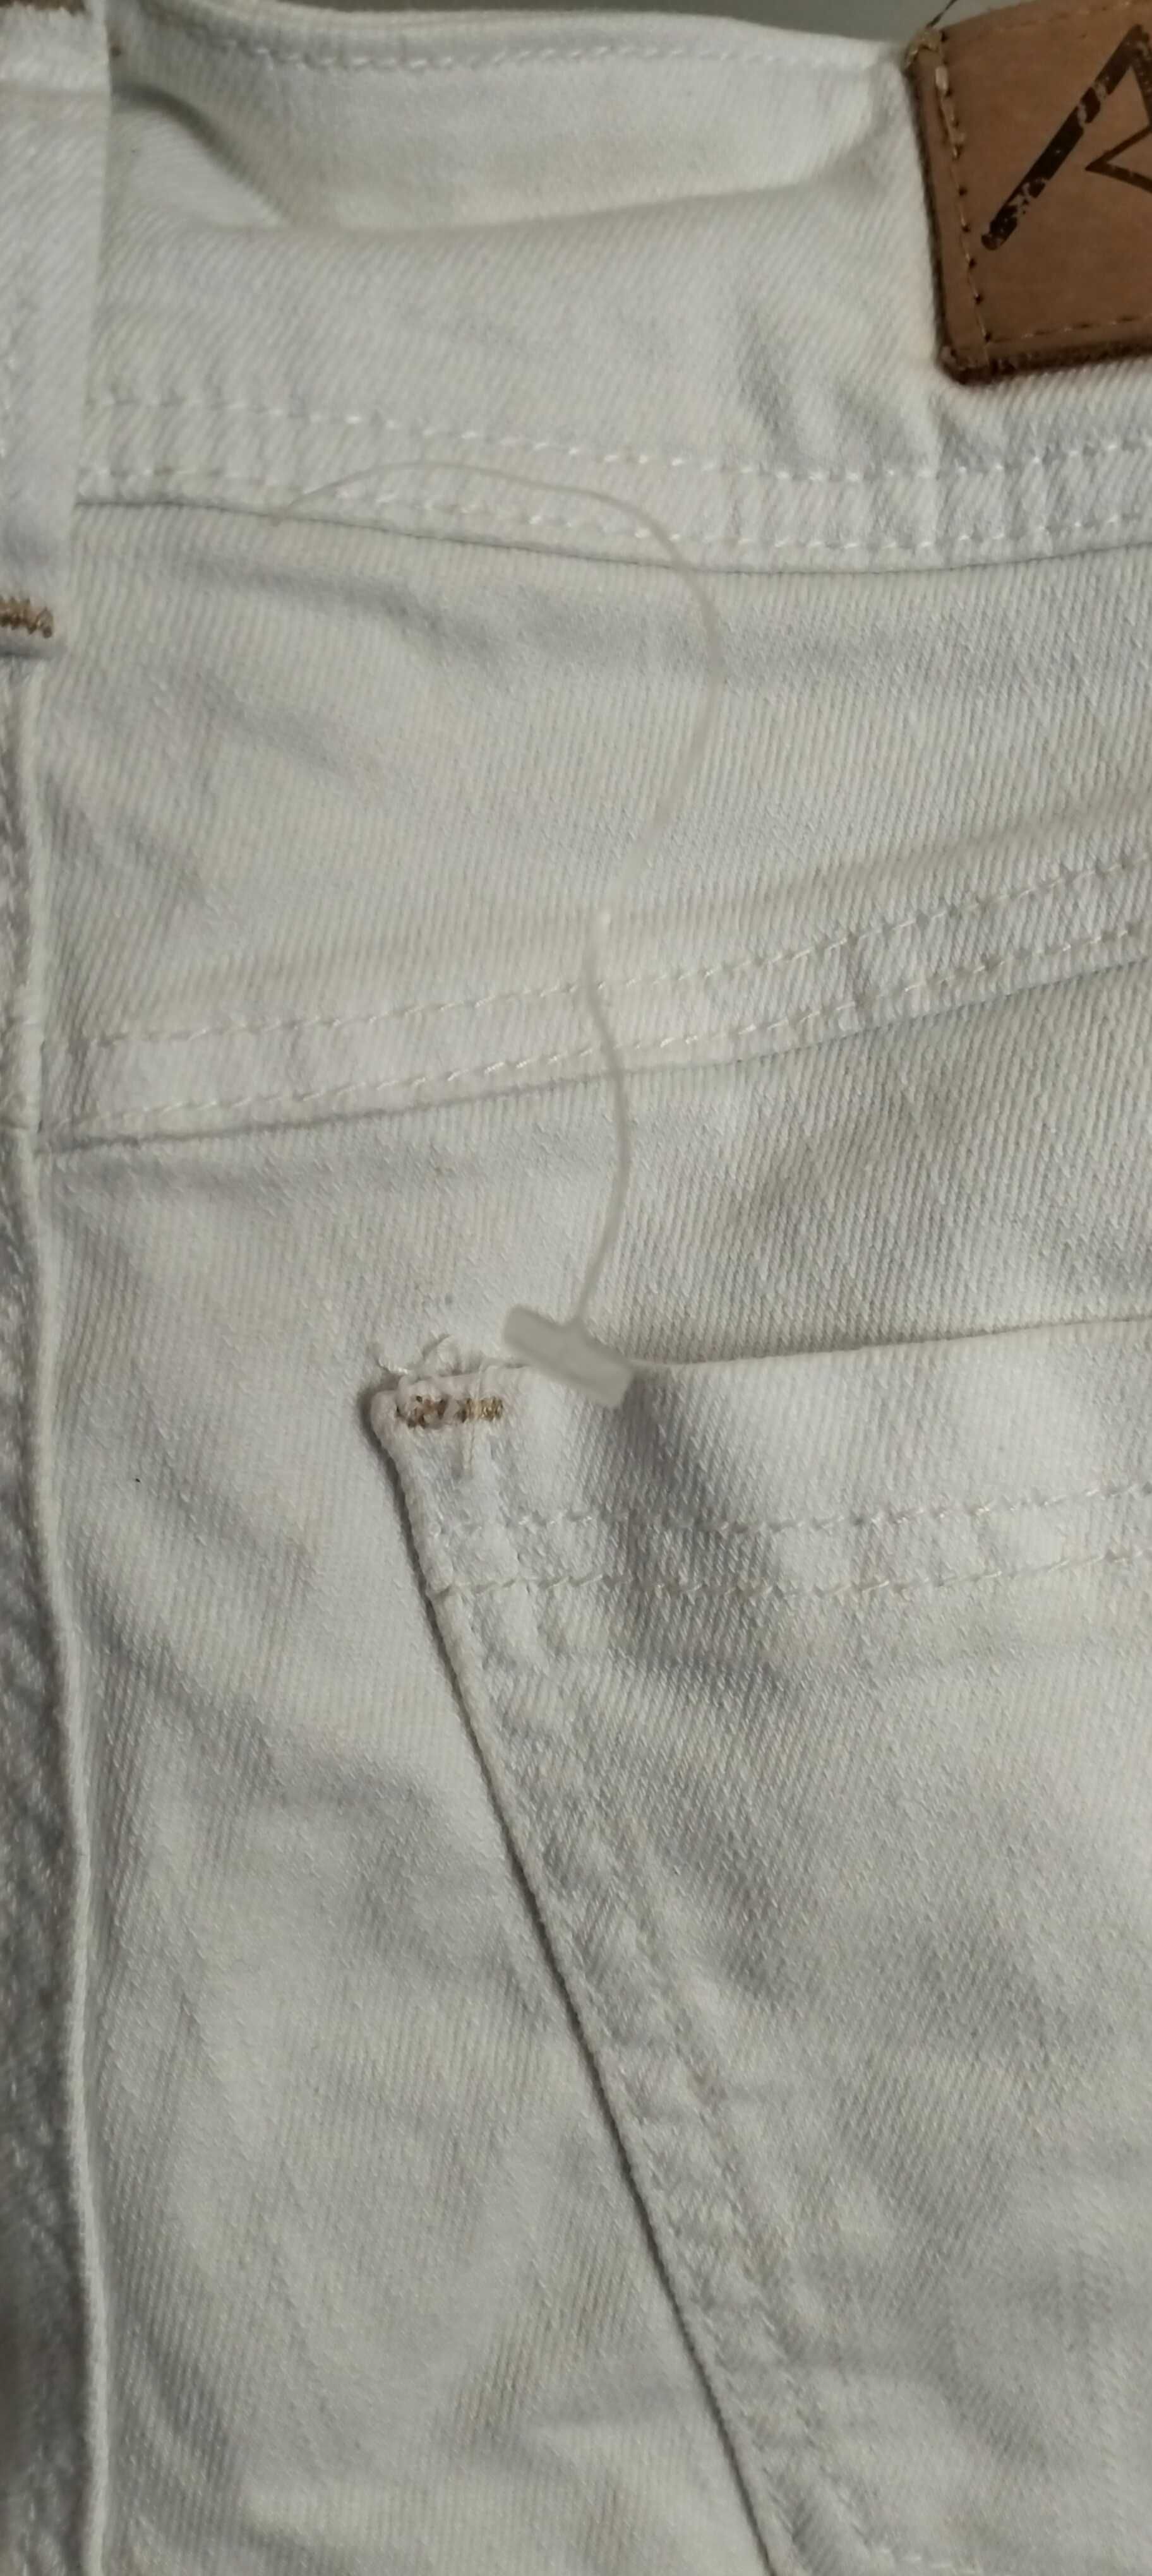 NOWE damskie białe jeansy marki AC denim rozmiar 30